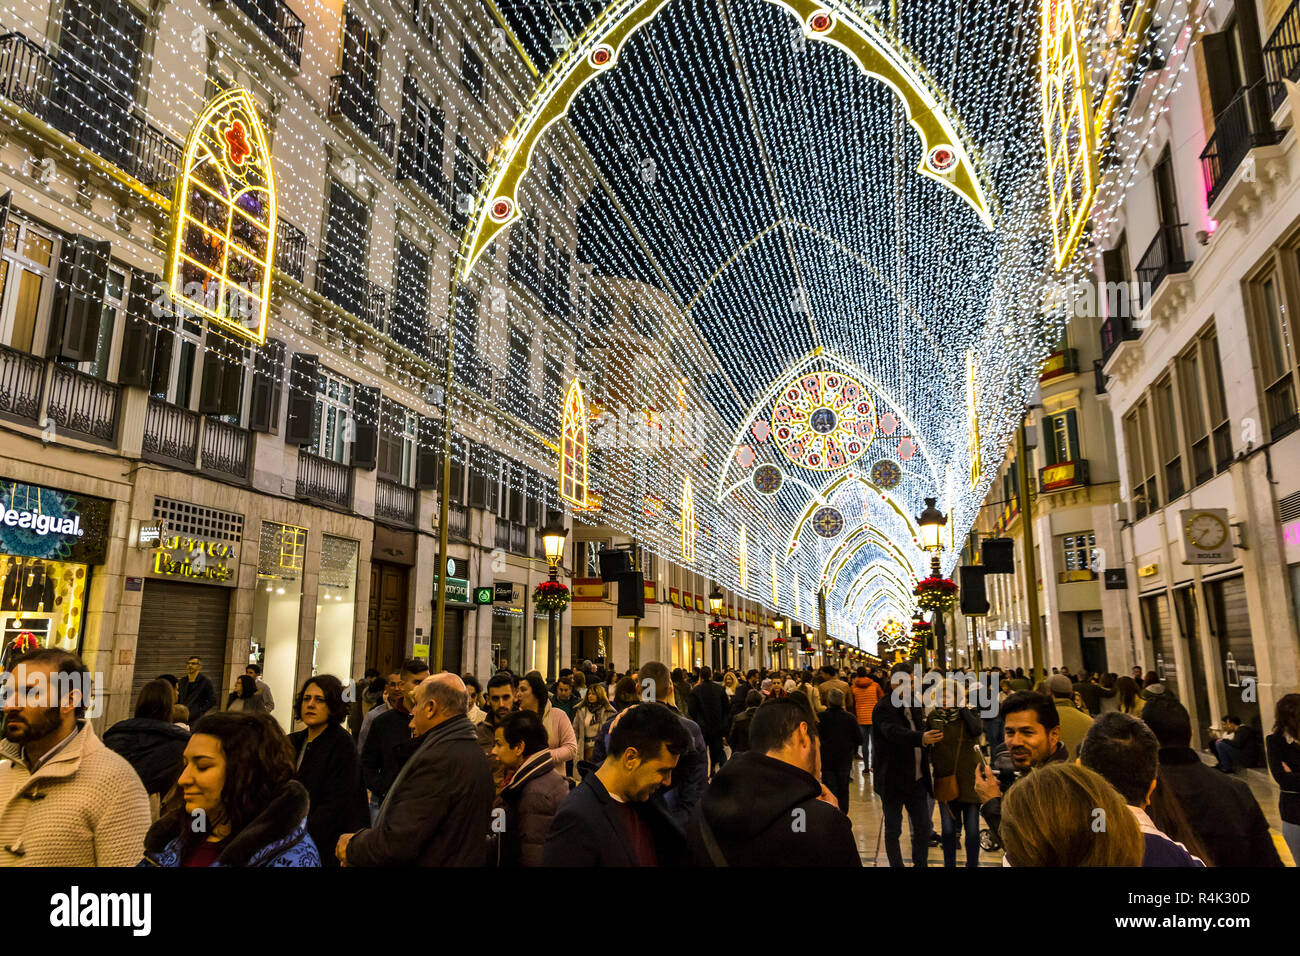 La folla di gente che cammina su Calle Marques de Larios, decorata con decorazioni di Natale, Malaga, Spagna Foto Stock